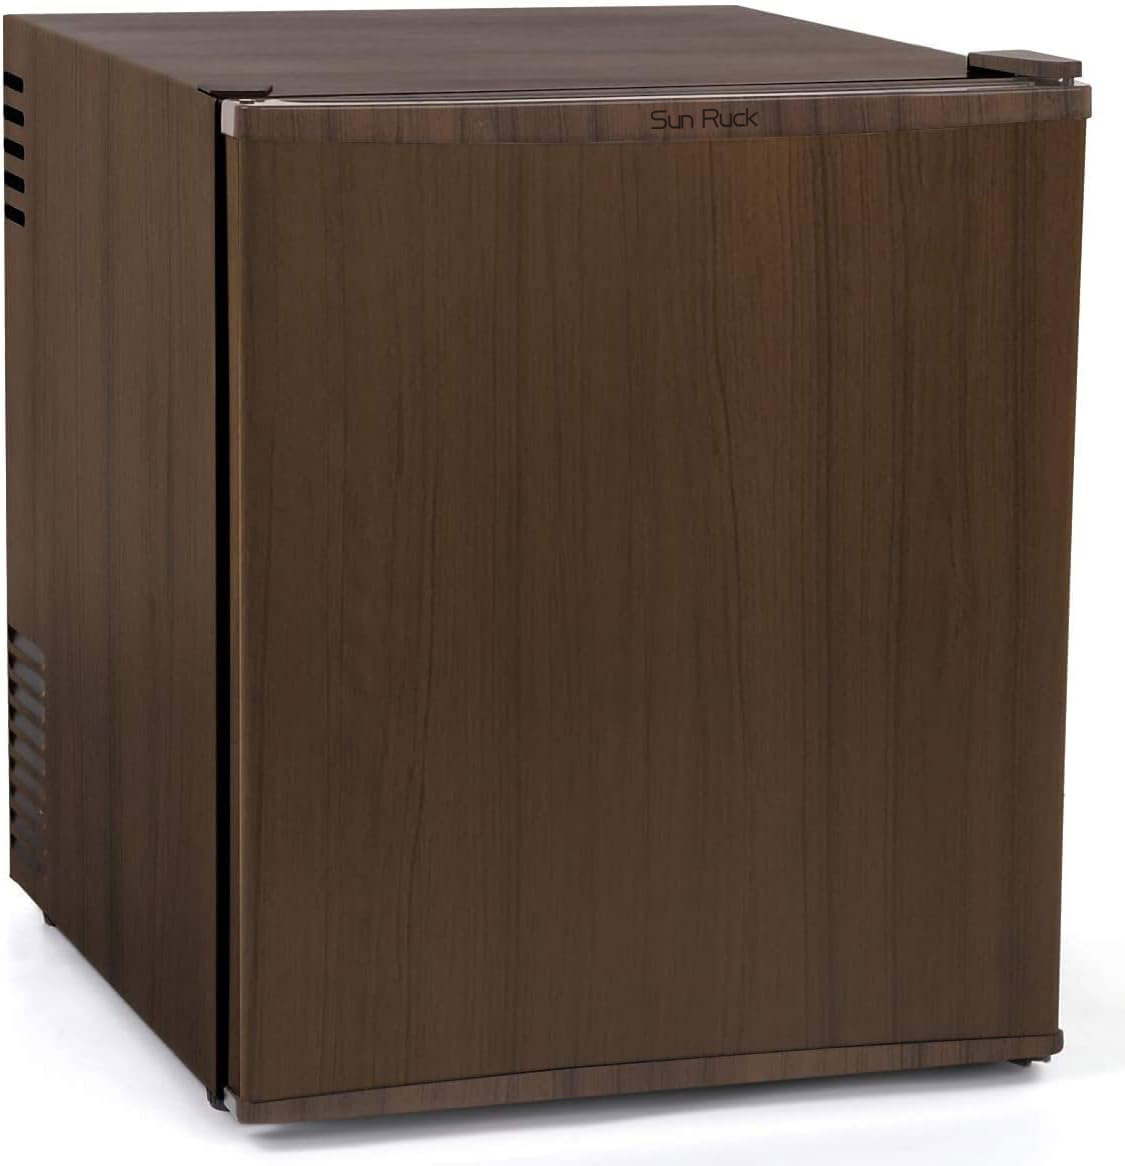 公式 180日延長保証 冷蔵庫 1ドア 48L ペルチェ方式 木目調 小型 おしゃれ 1ドア冷蔵庫 小型冷蔵庫 セカンド冷蔵庫 ミニ冷蔵庫 右開き  SunRuck